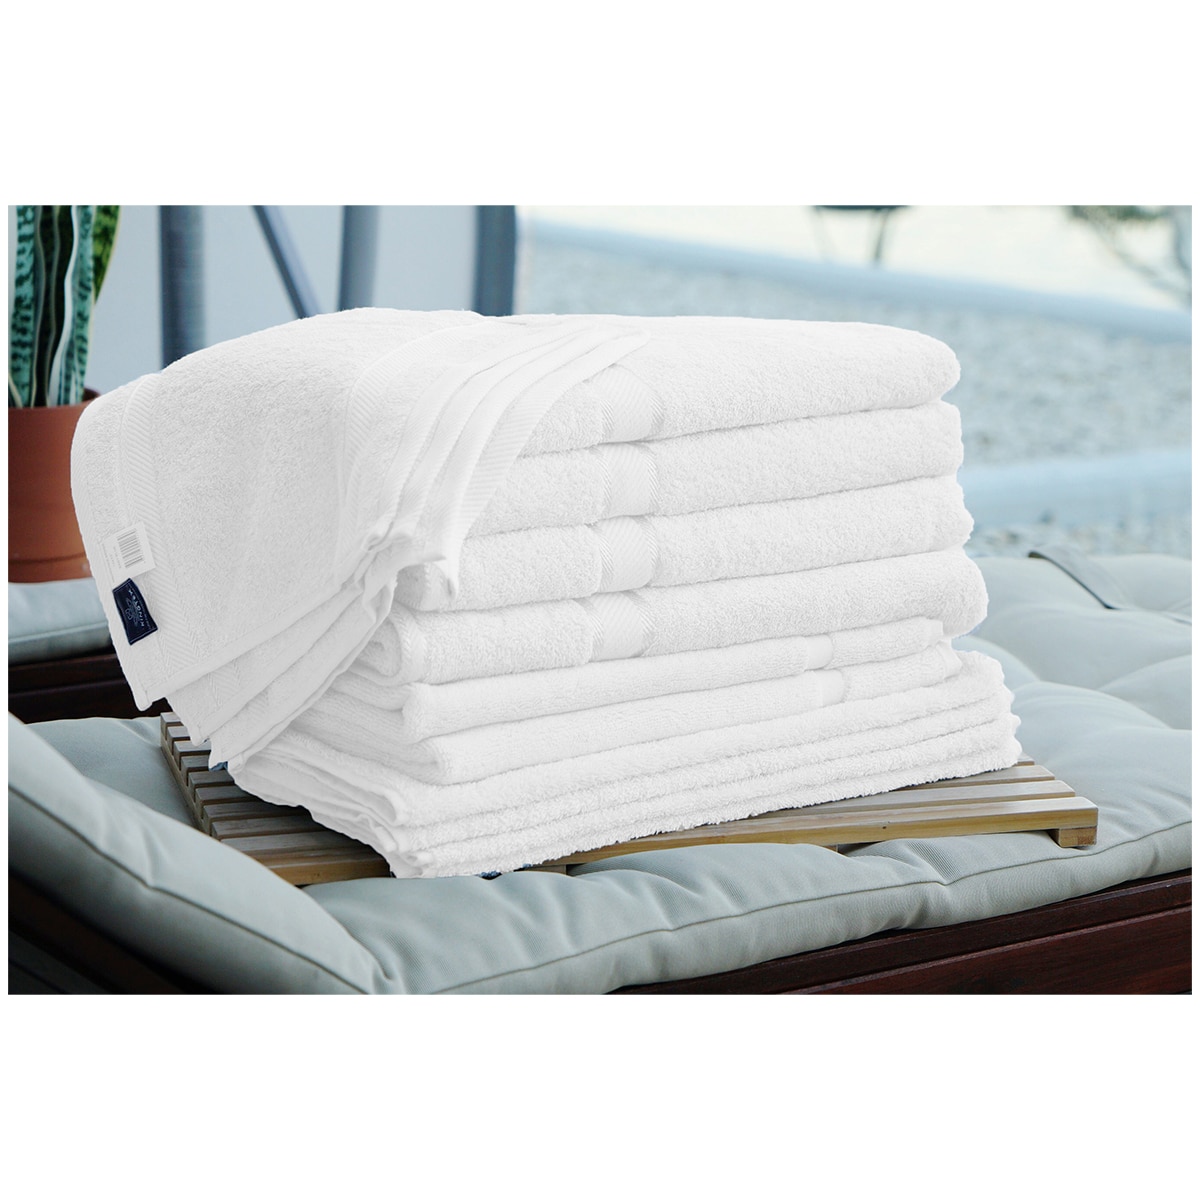 Kingtex Plain dyed 100% Combed Cotton towel range 550gsm Bath Sheet set 14 piece - White